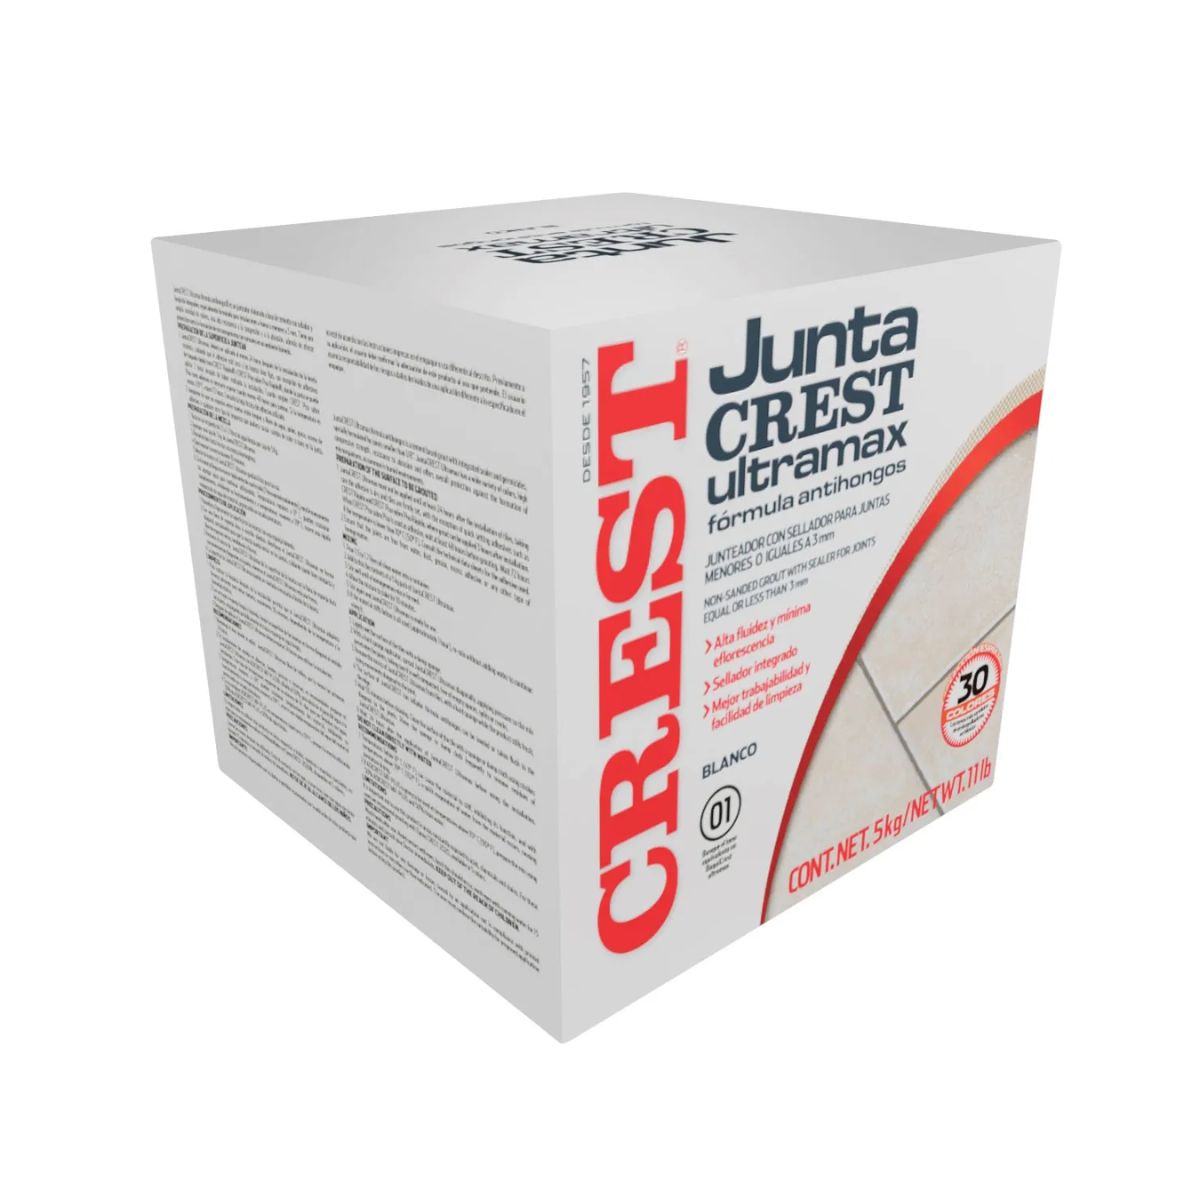 Juntacrest Ultramax 5kg Blanco - Crest